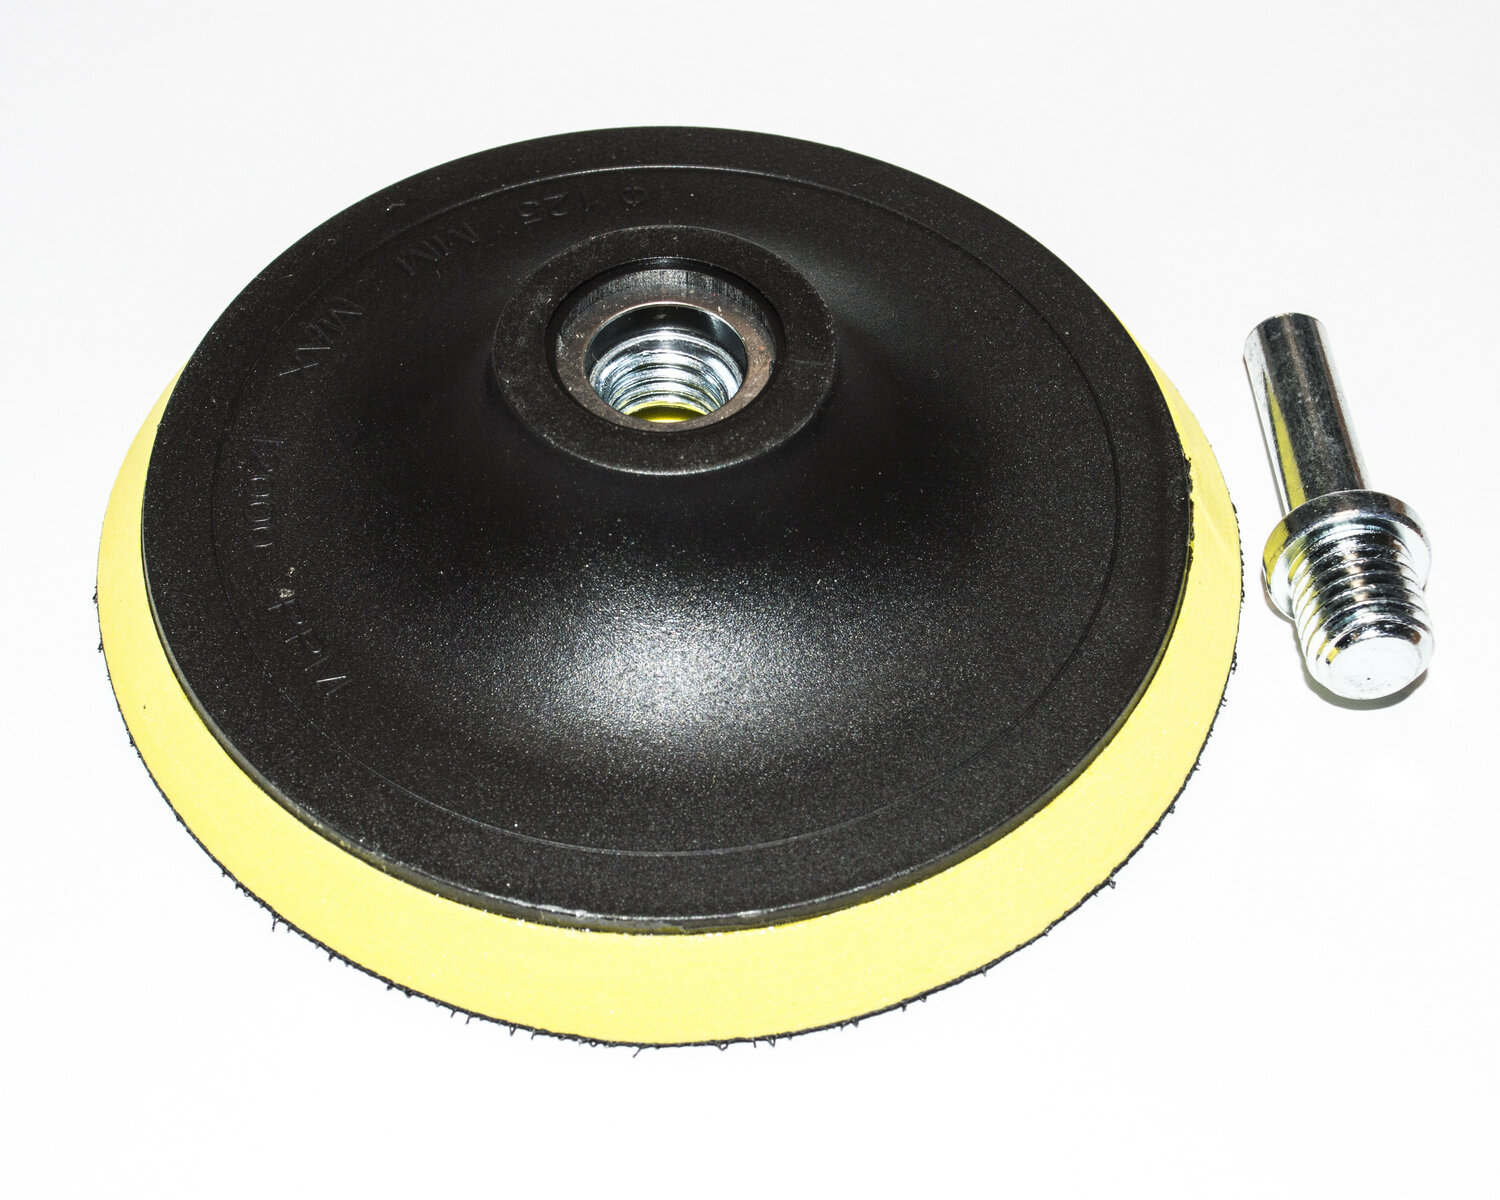 Тарелка опорная с липучкой для УШМ (болгарки), диаметр 125 мм, толщина 10 мм, с переходником под дрель (хвостовик цилиндрический 10 мм)